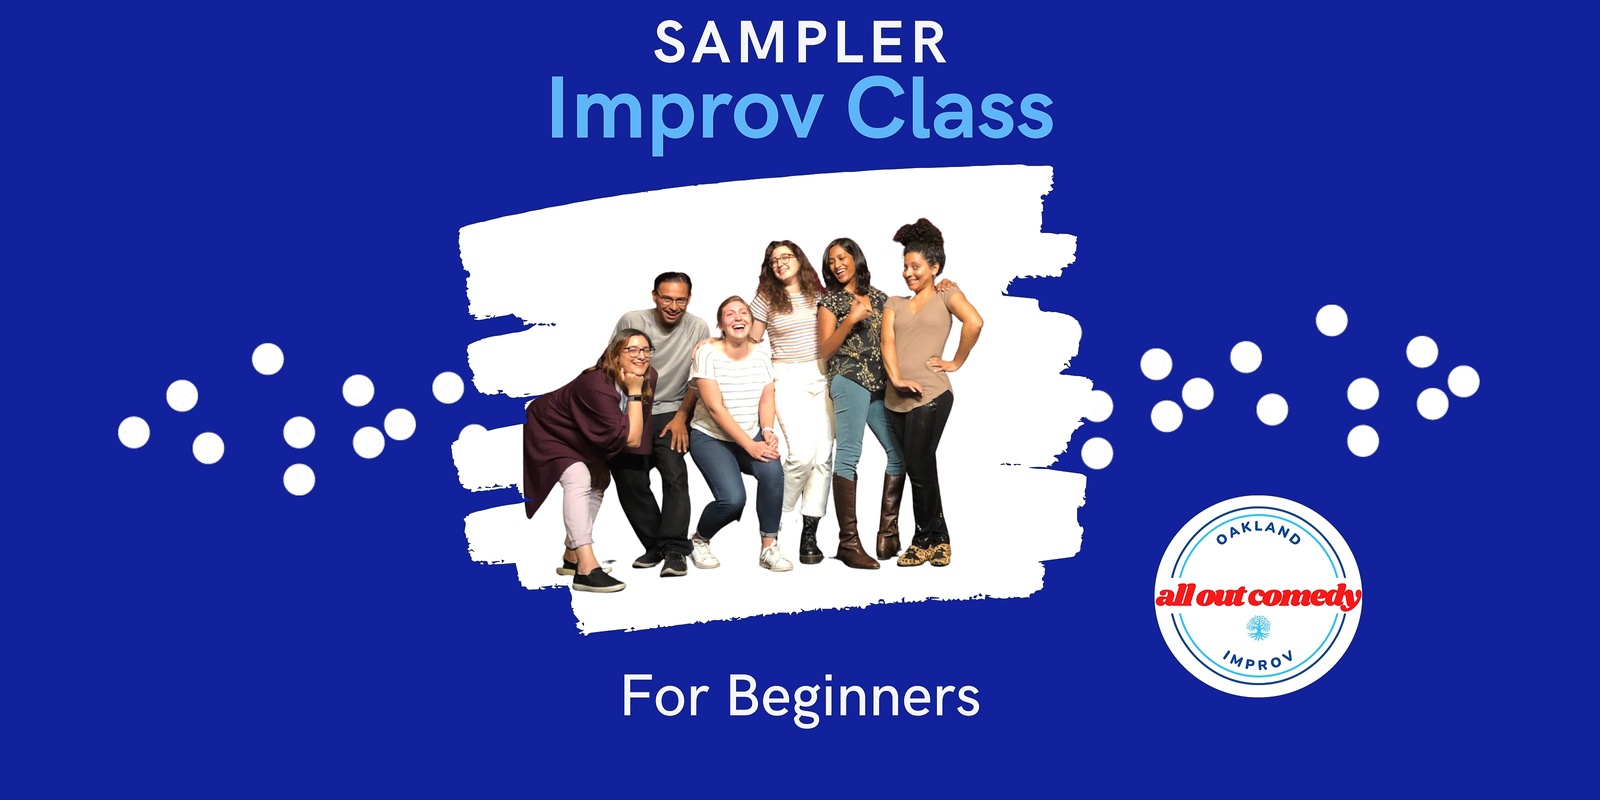 Banner image for Sampler Improv Class For Beginners